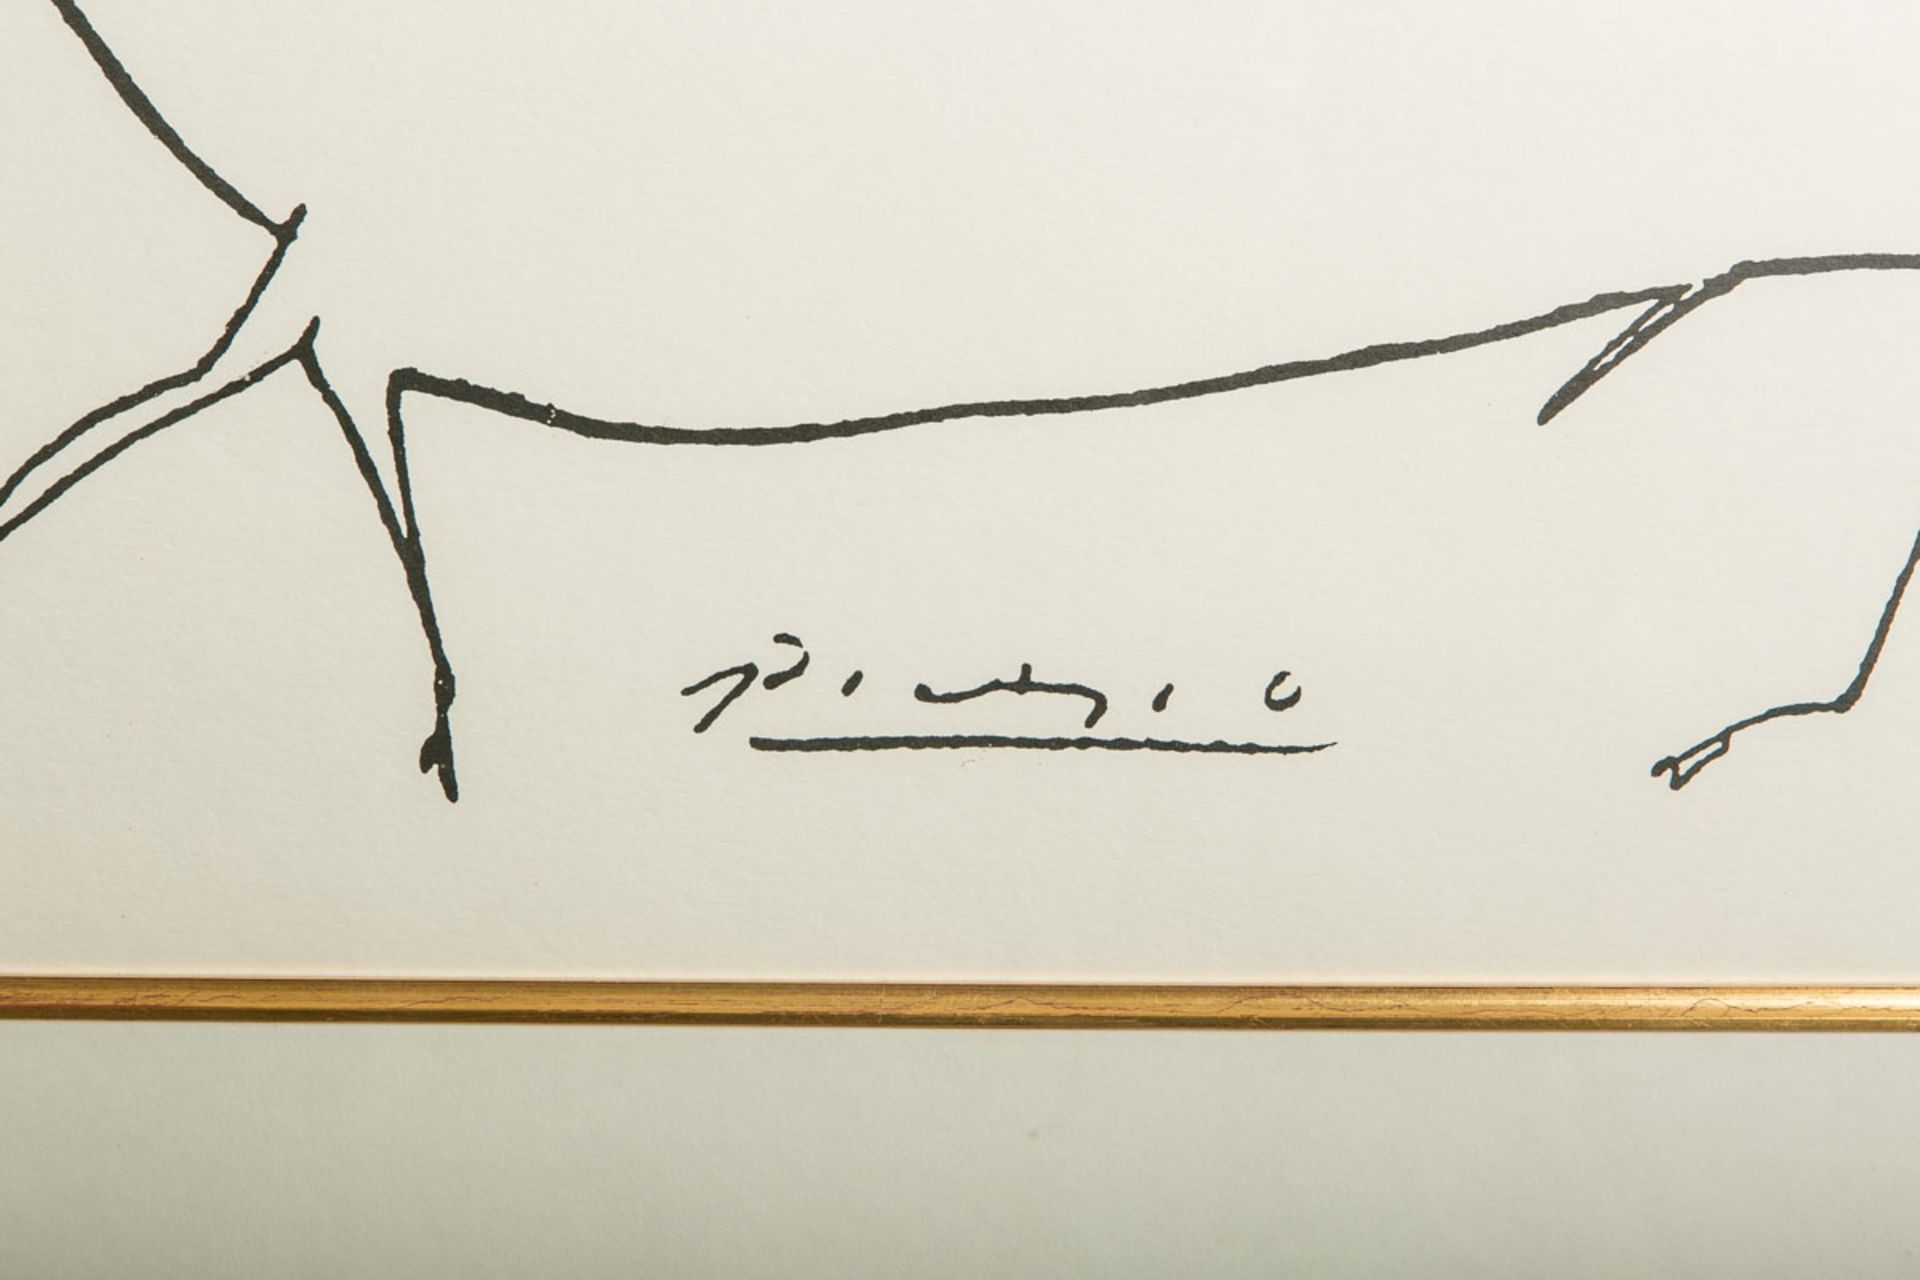 Picasso, Pablo (1881 - 1973), "Das Schwein" - Image 2 of 2